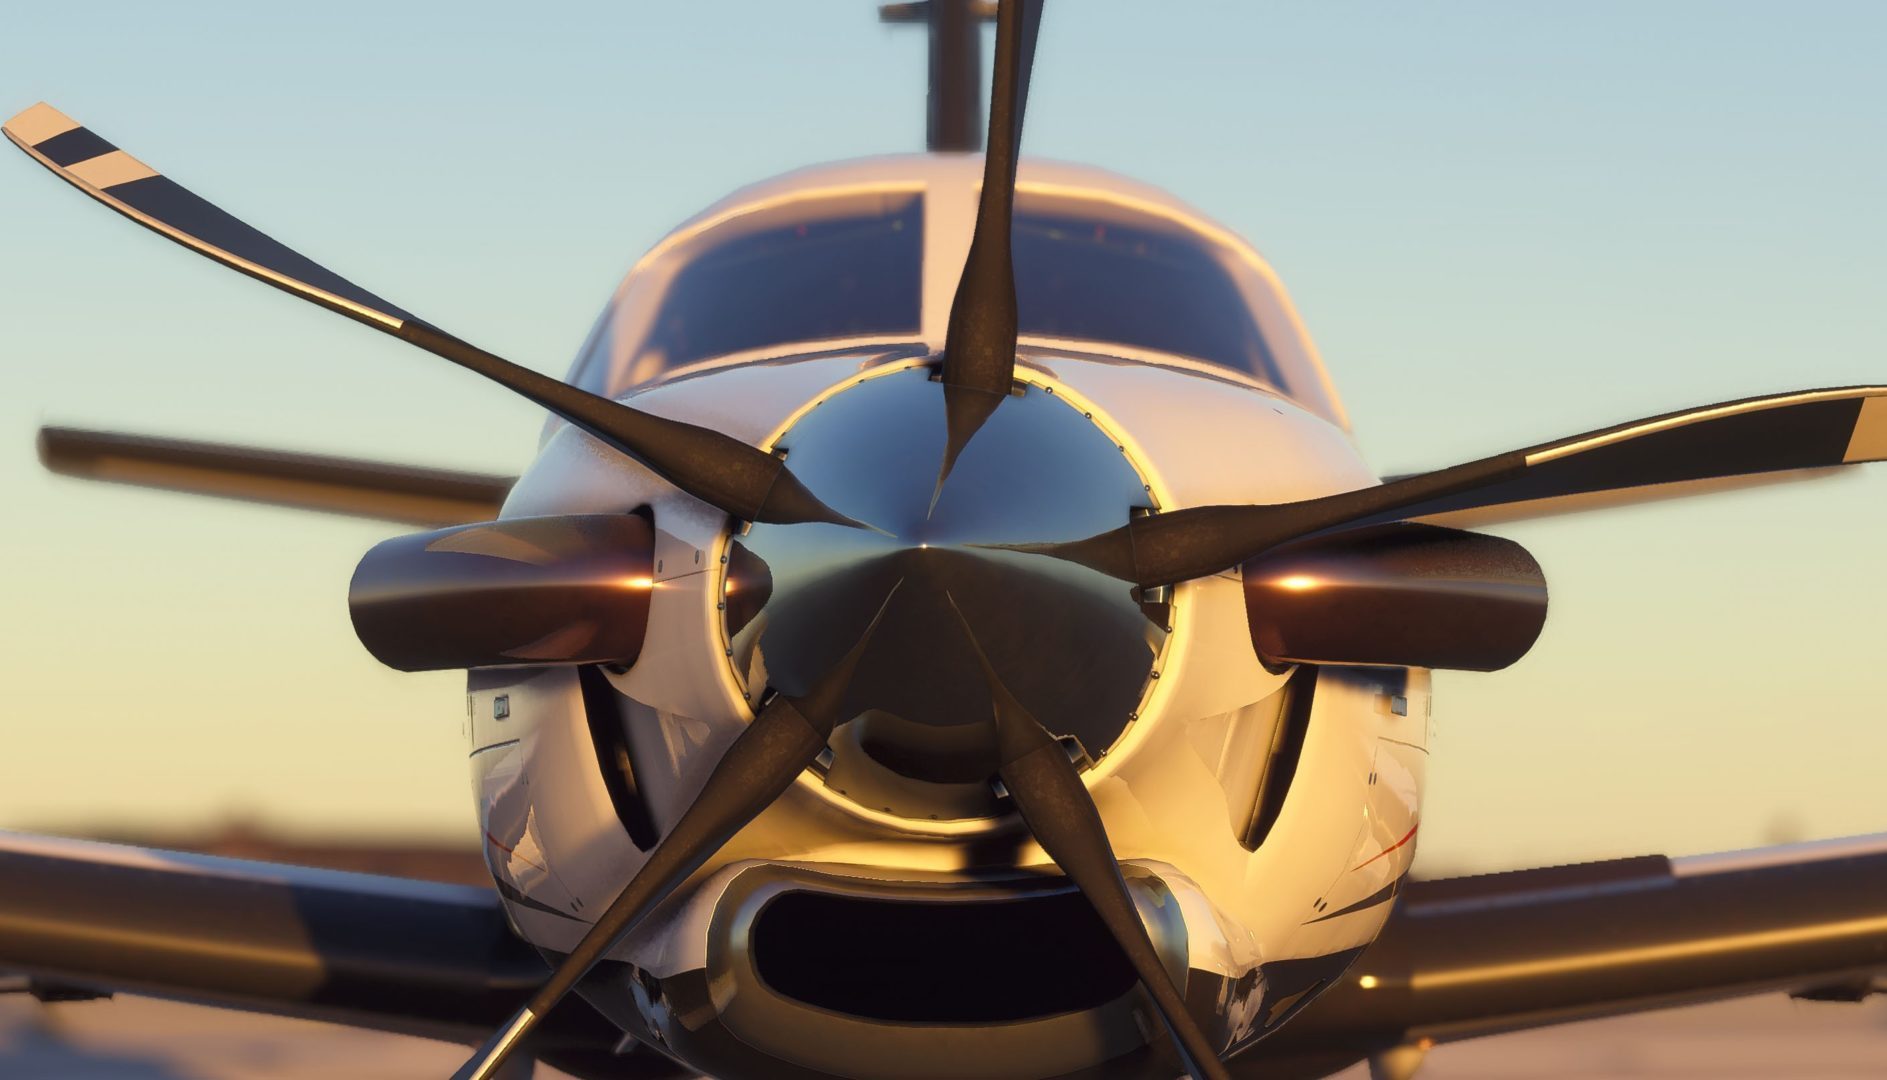 《微软飞行模拟》游戏新截图曝光   2020发售